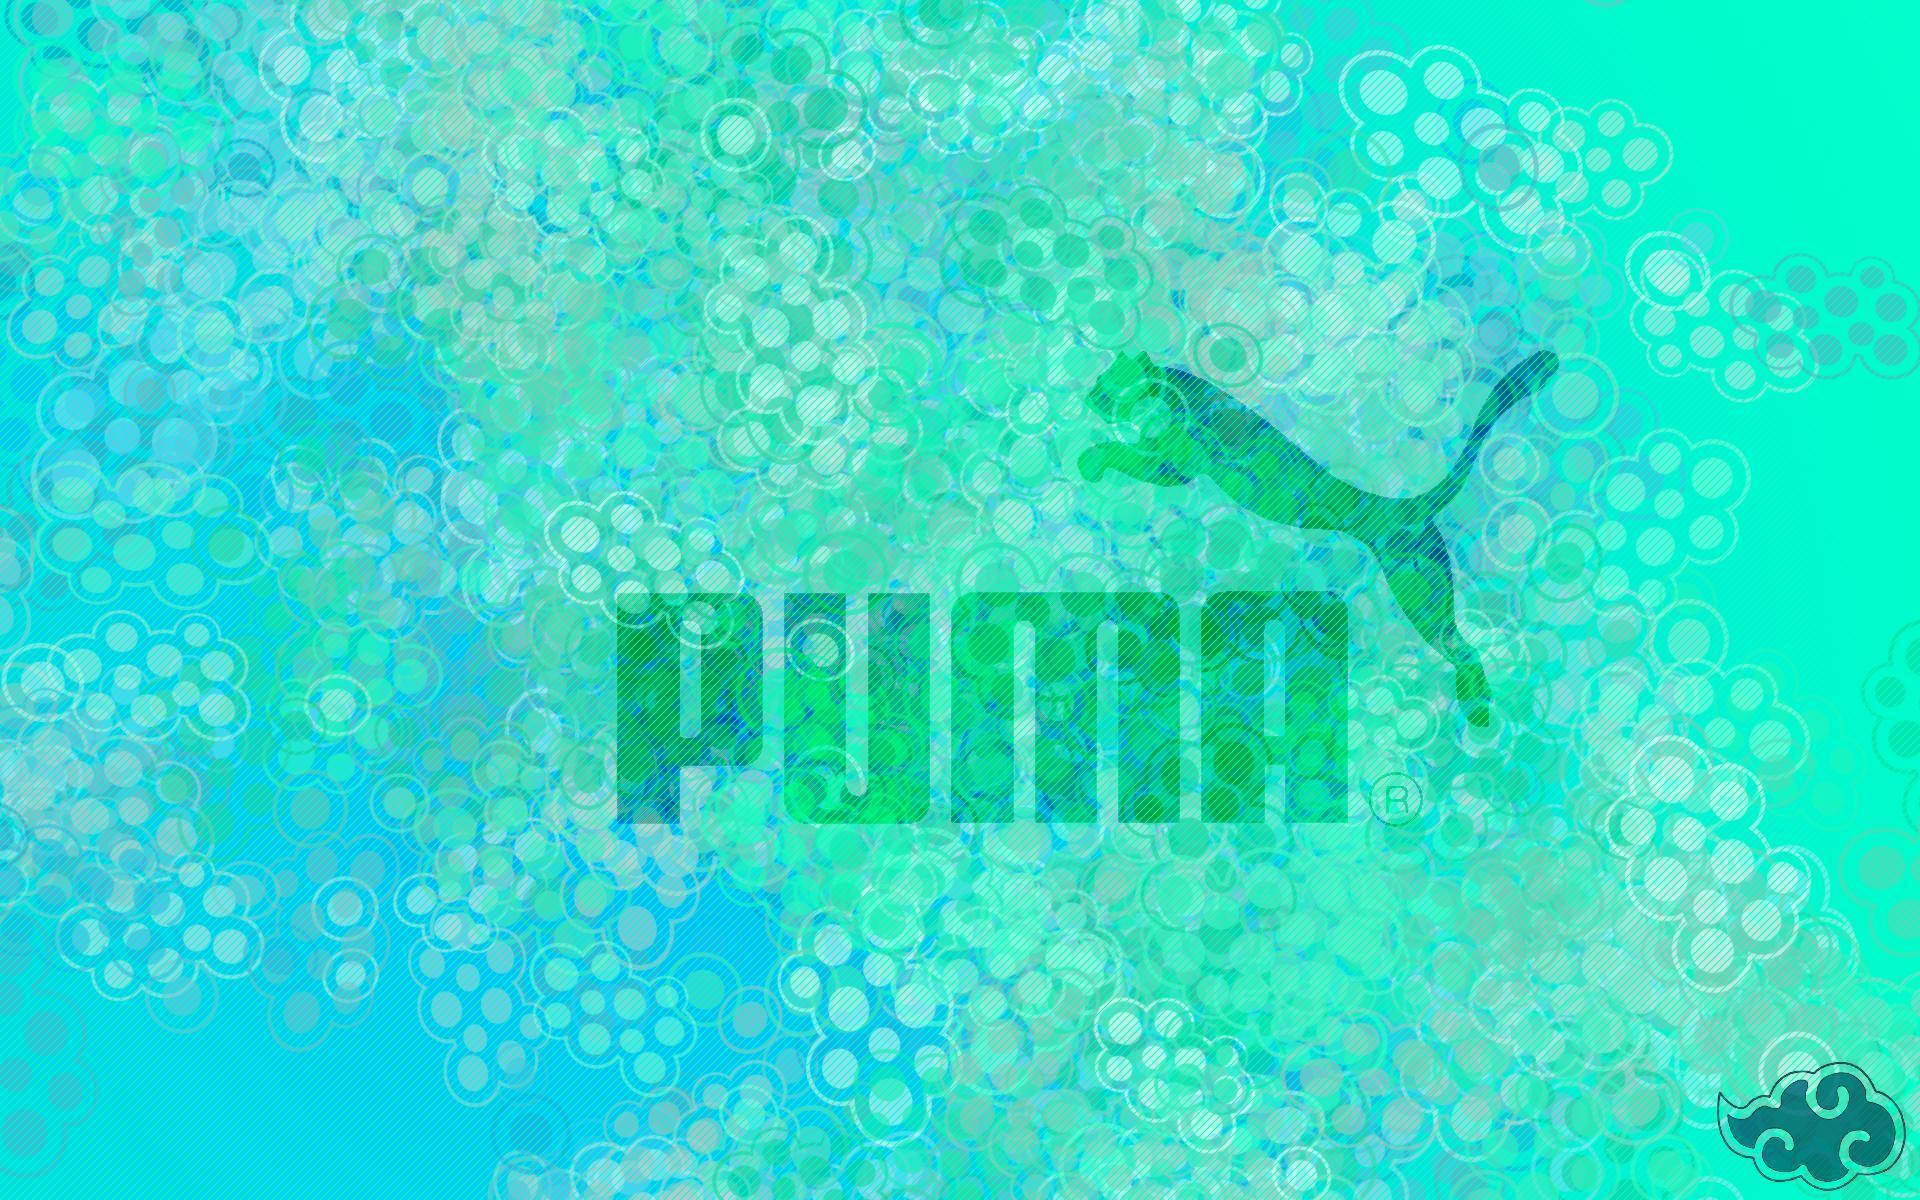 Puma i grønt Wallpaper